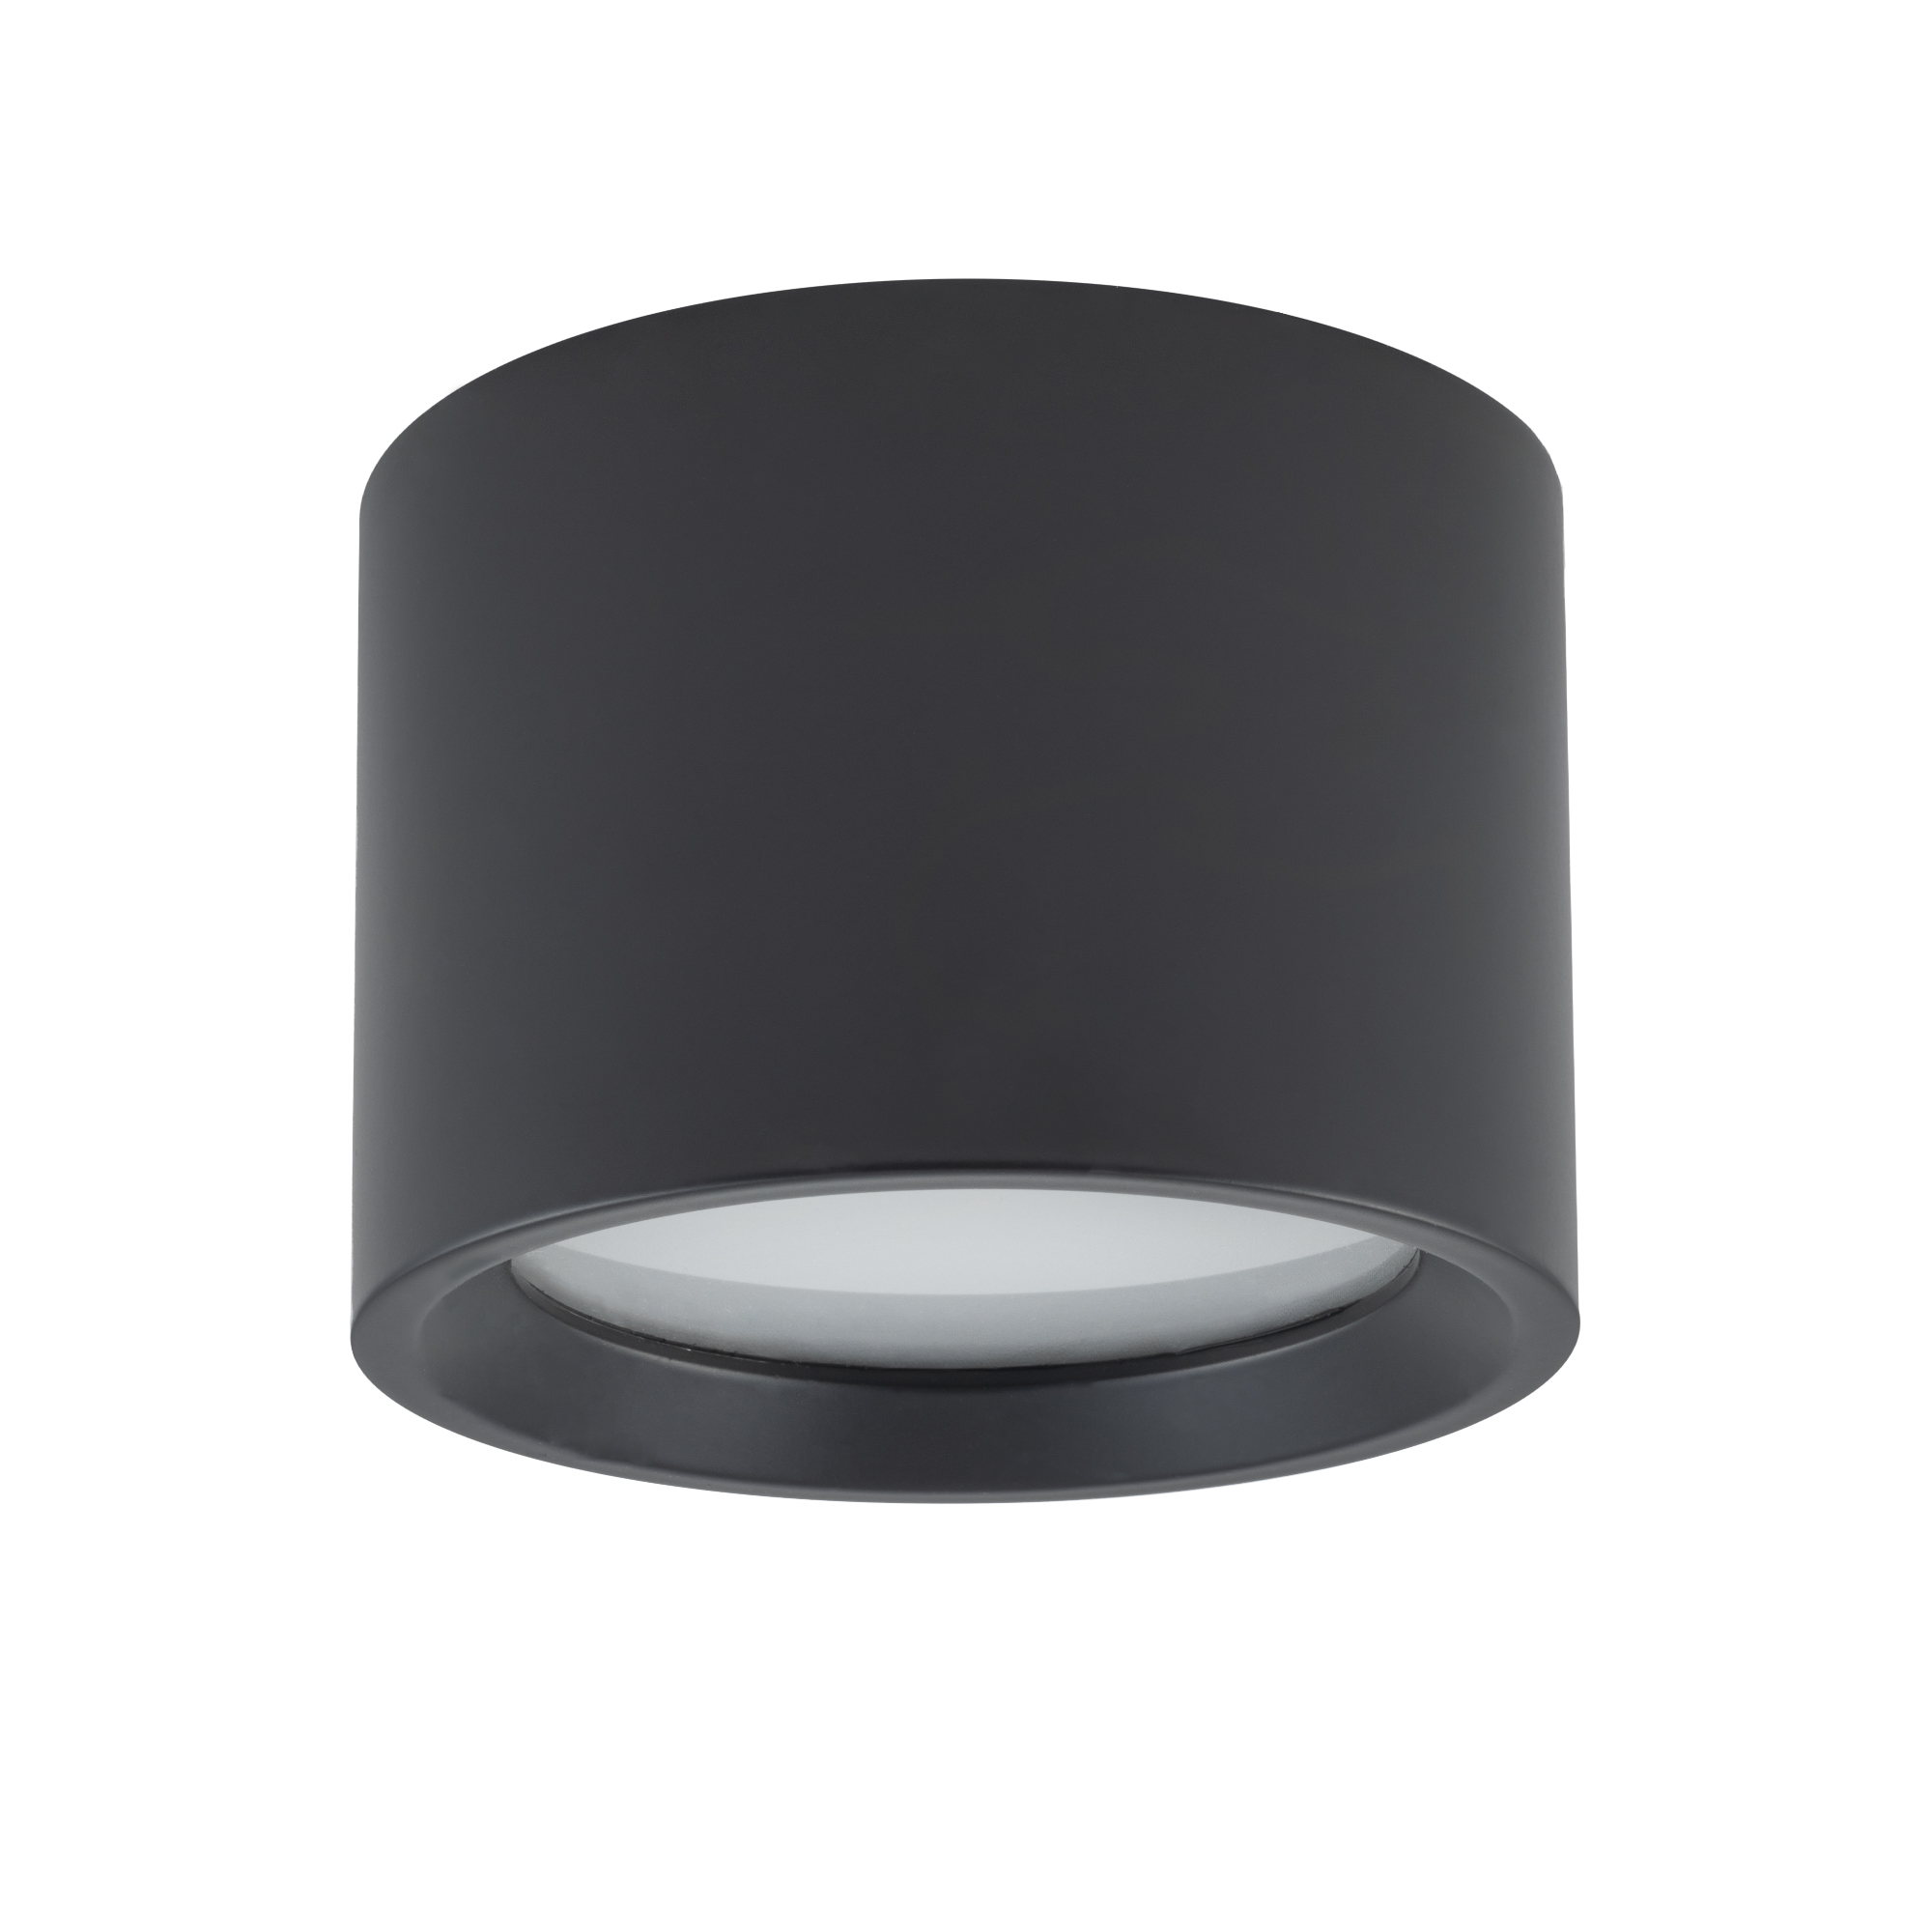 Lampa punktowa czarna-aluminium GX53 kuchnia/azienka IP54 BOL Nowodvorski 10484